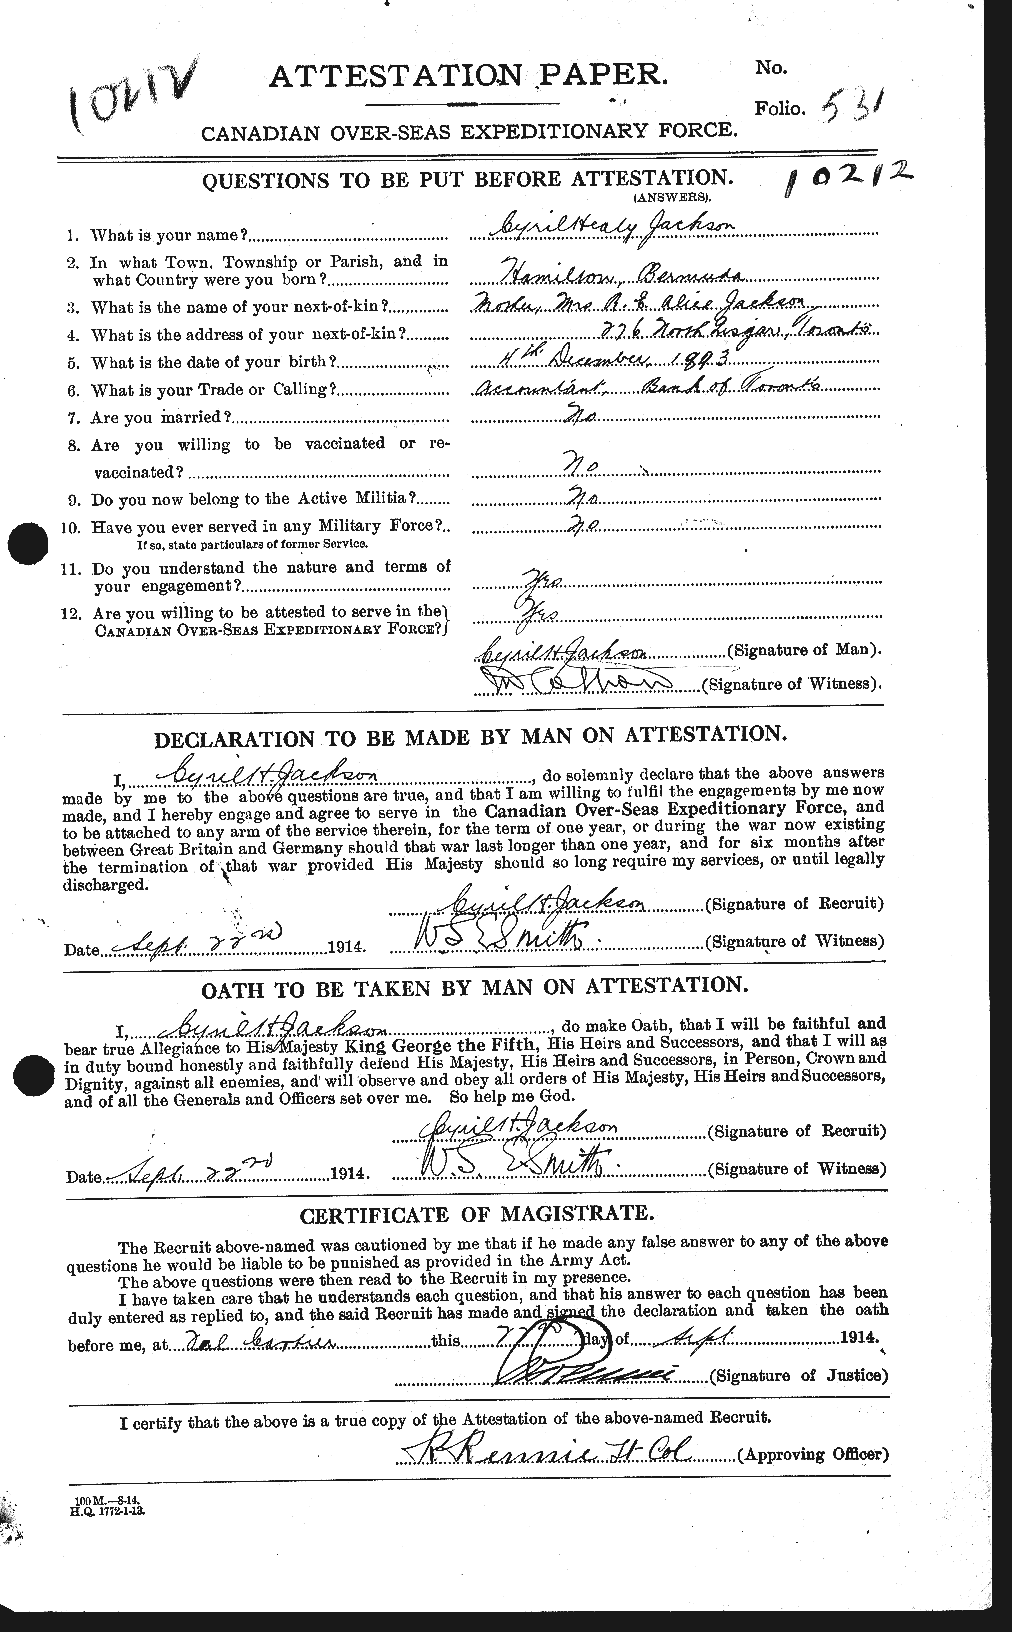 Dossiers du Personnel de la Première Guerre mondiale - CEC 411857a